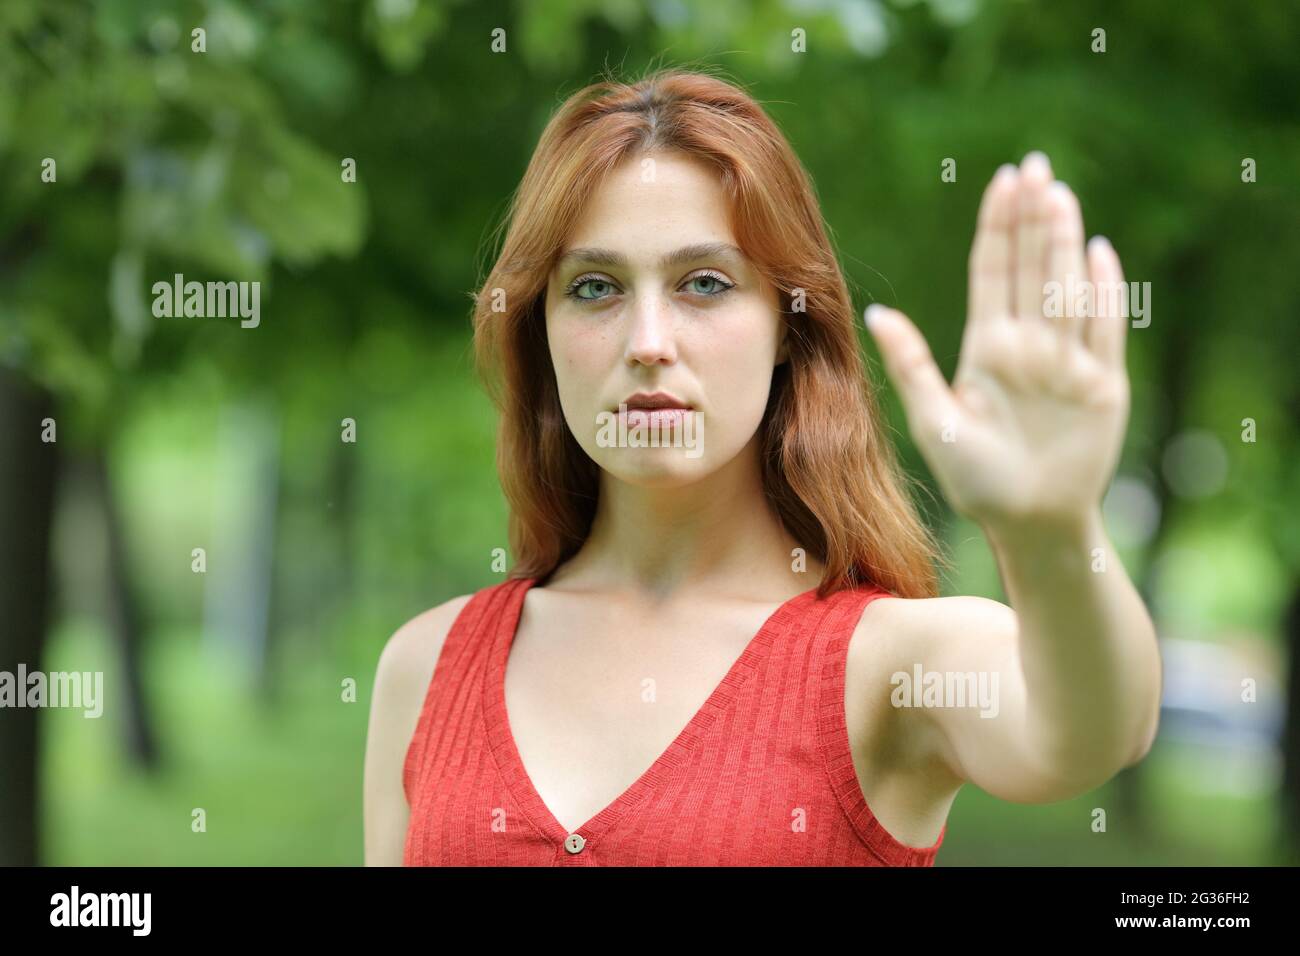 Ernsthafte Rothaarige Frau, die gestikuliert, hält mit ihrer Hand in einem Park stehen Stockfoto